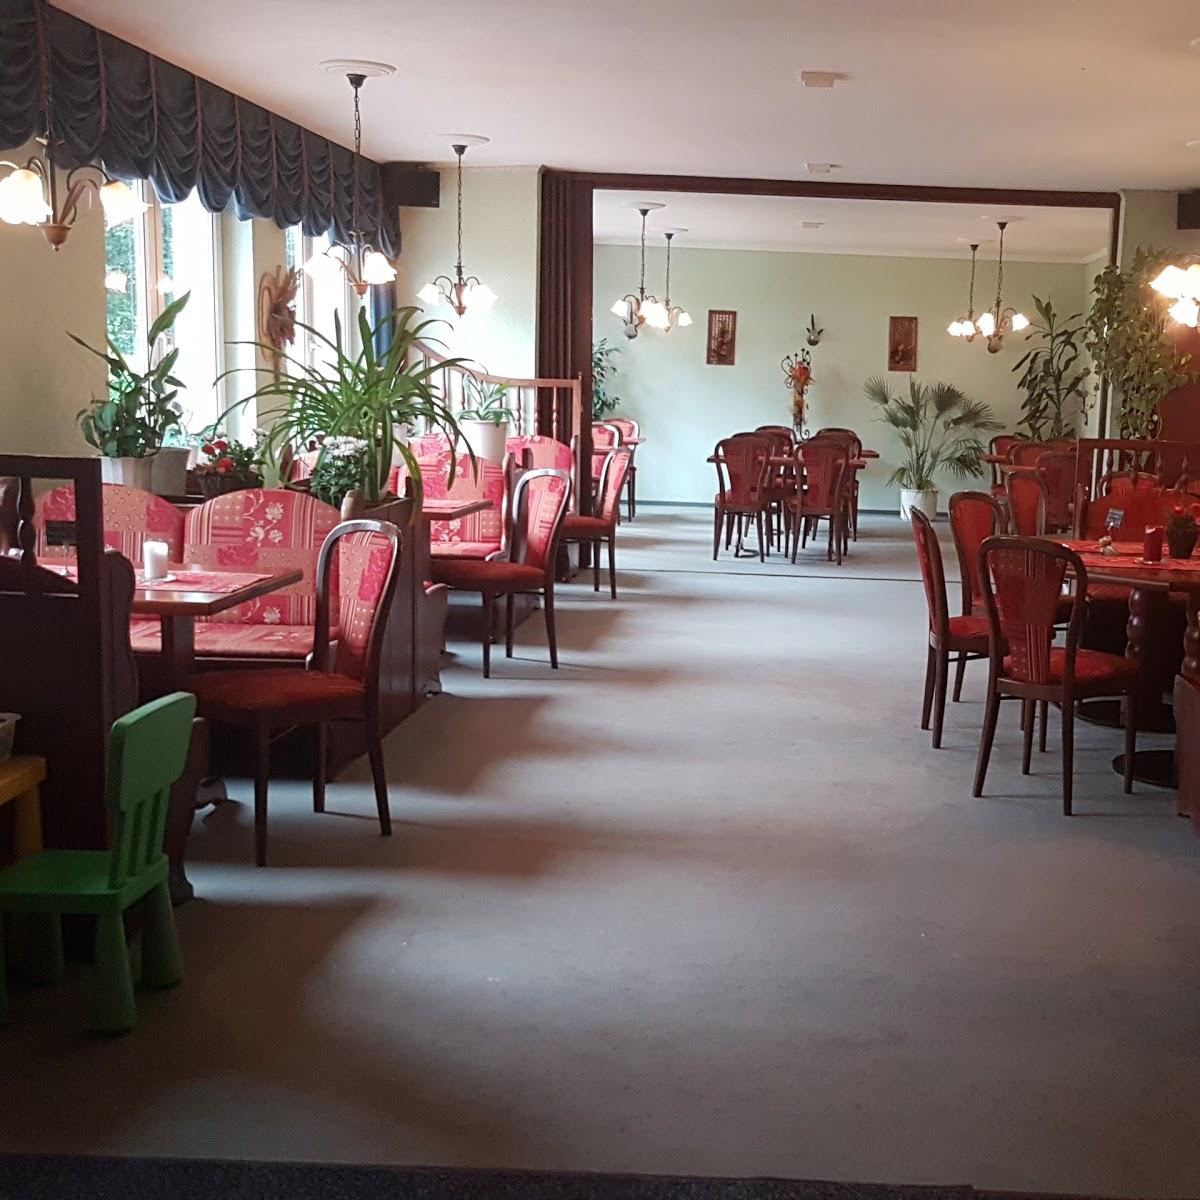 Restaurant "Unterhaltungsgastronomie Daddeldu" in  Saal